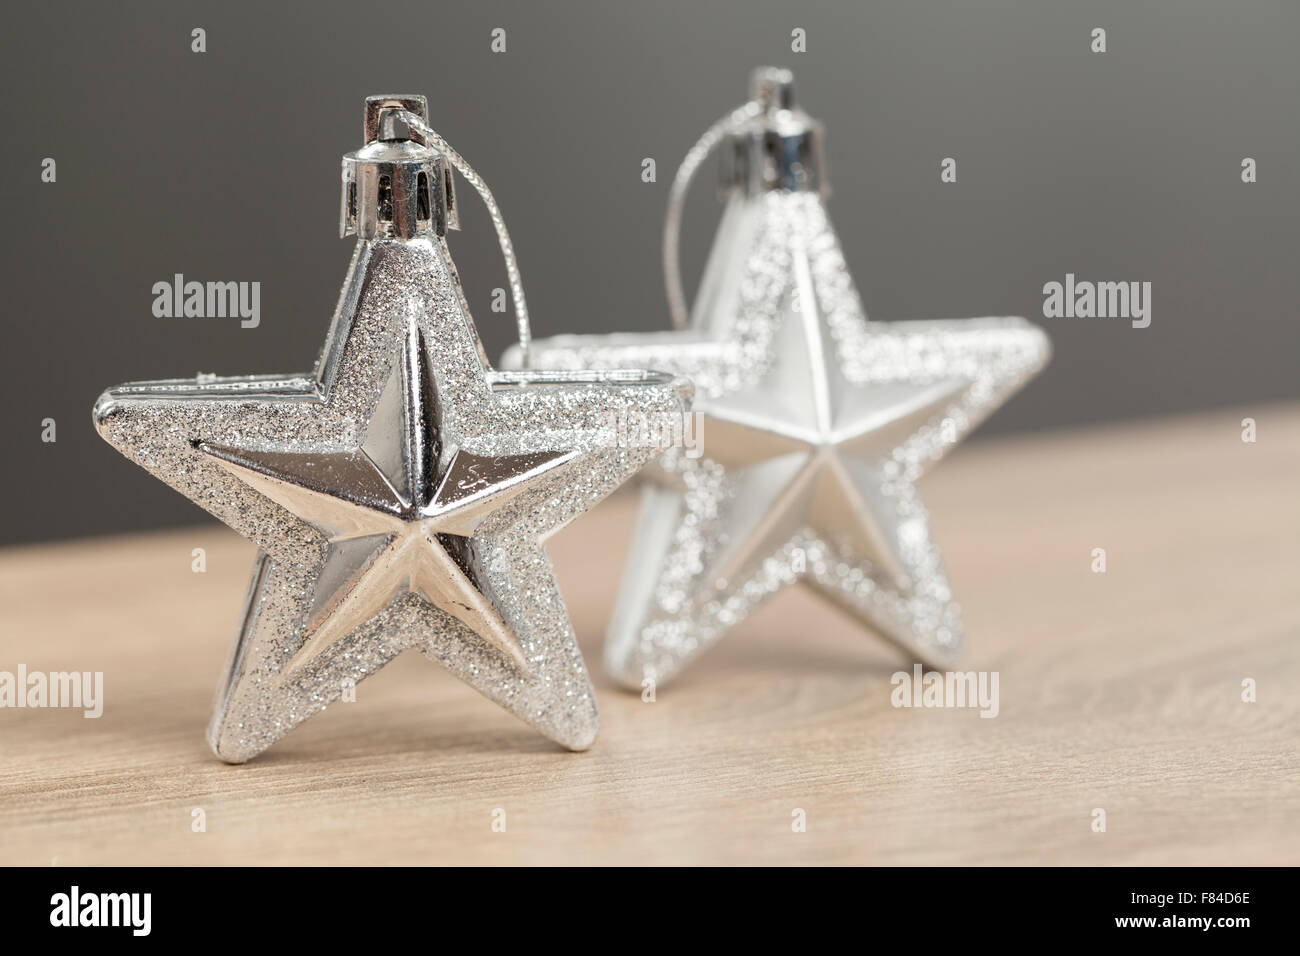 Décoration de Noël avec deux étoiles d'argent Banque D'Images